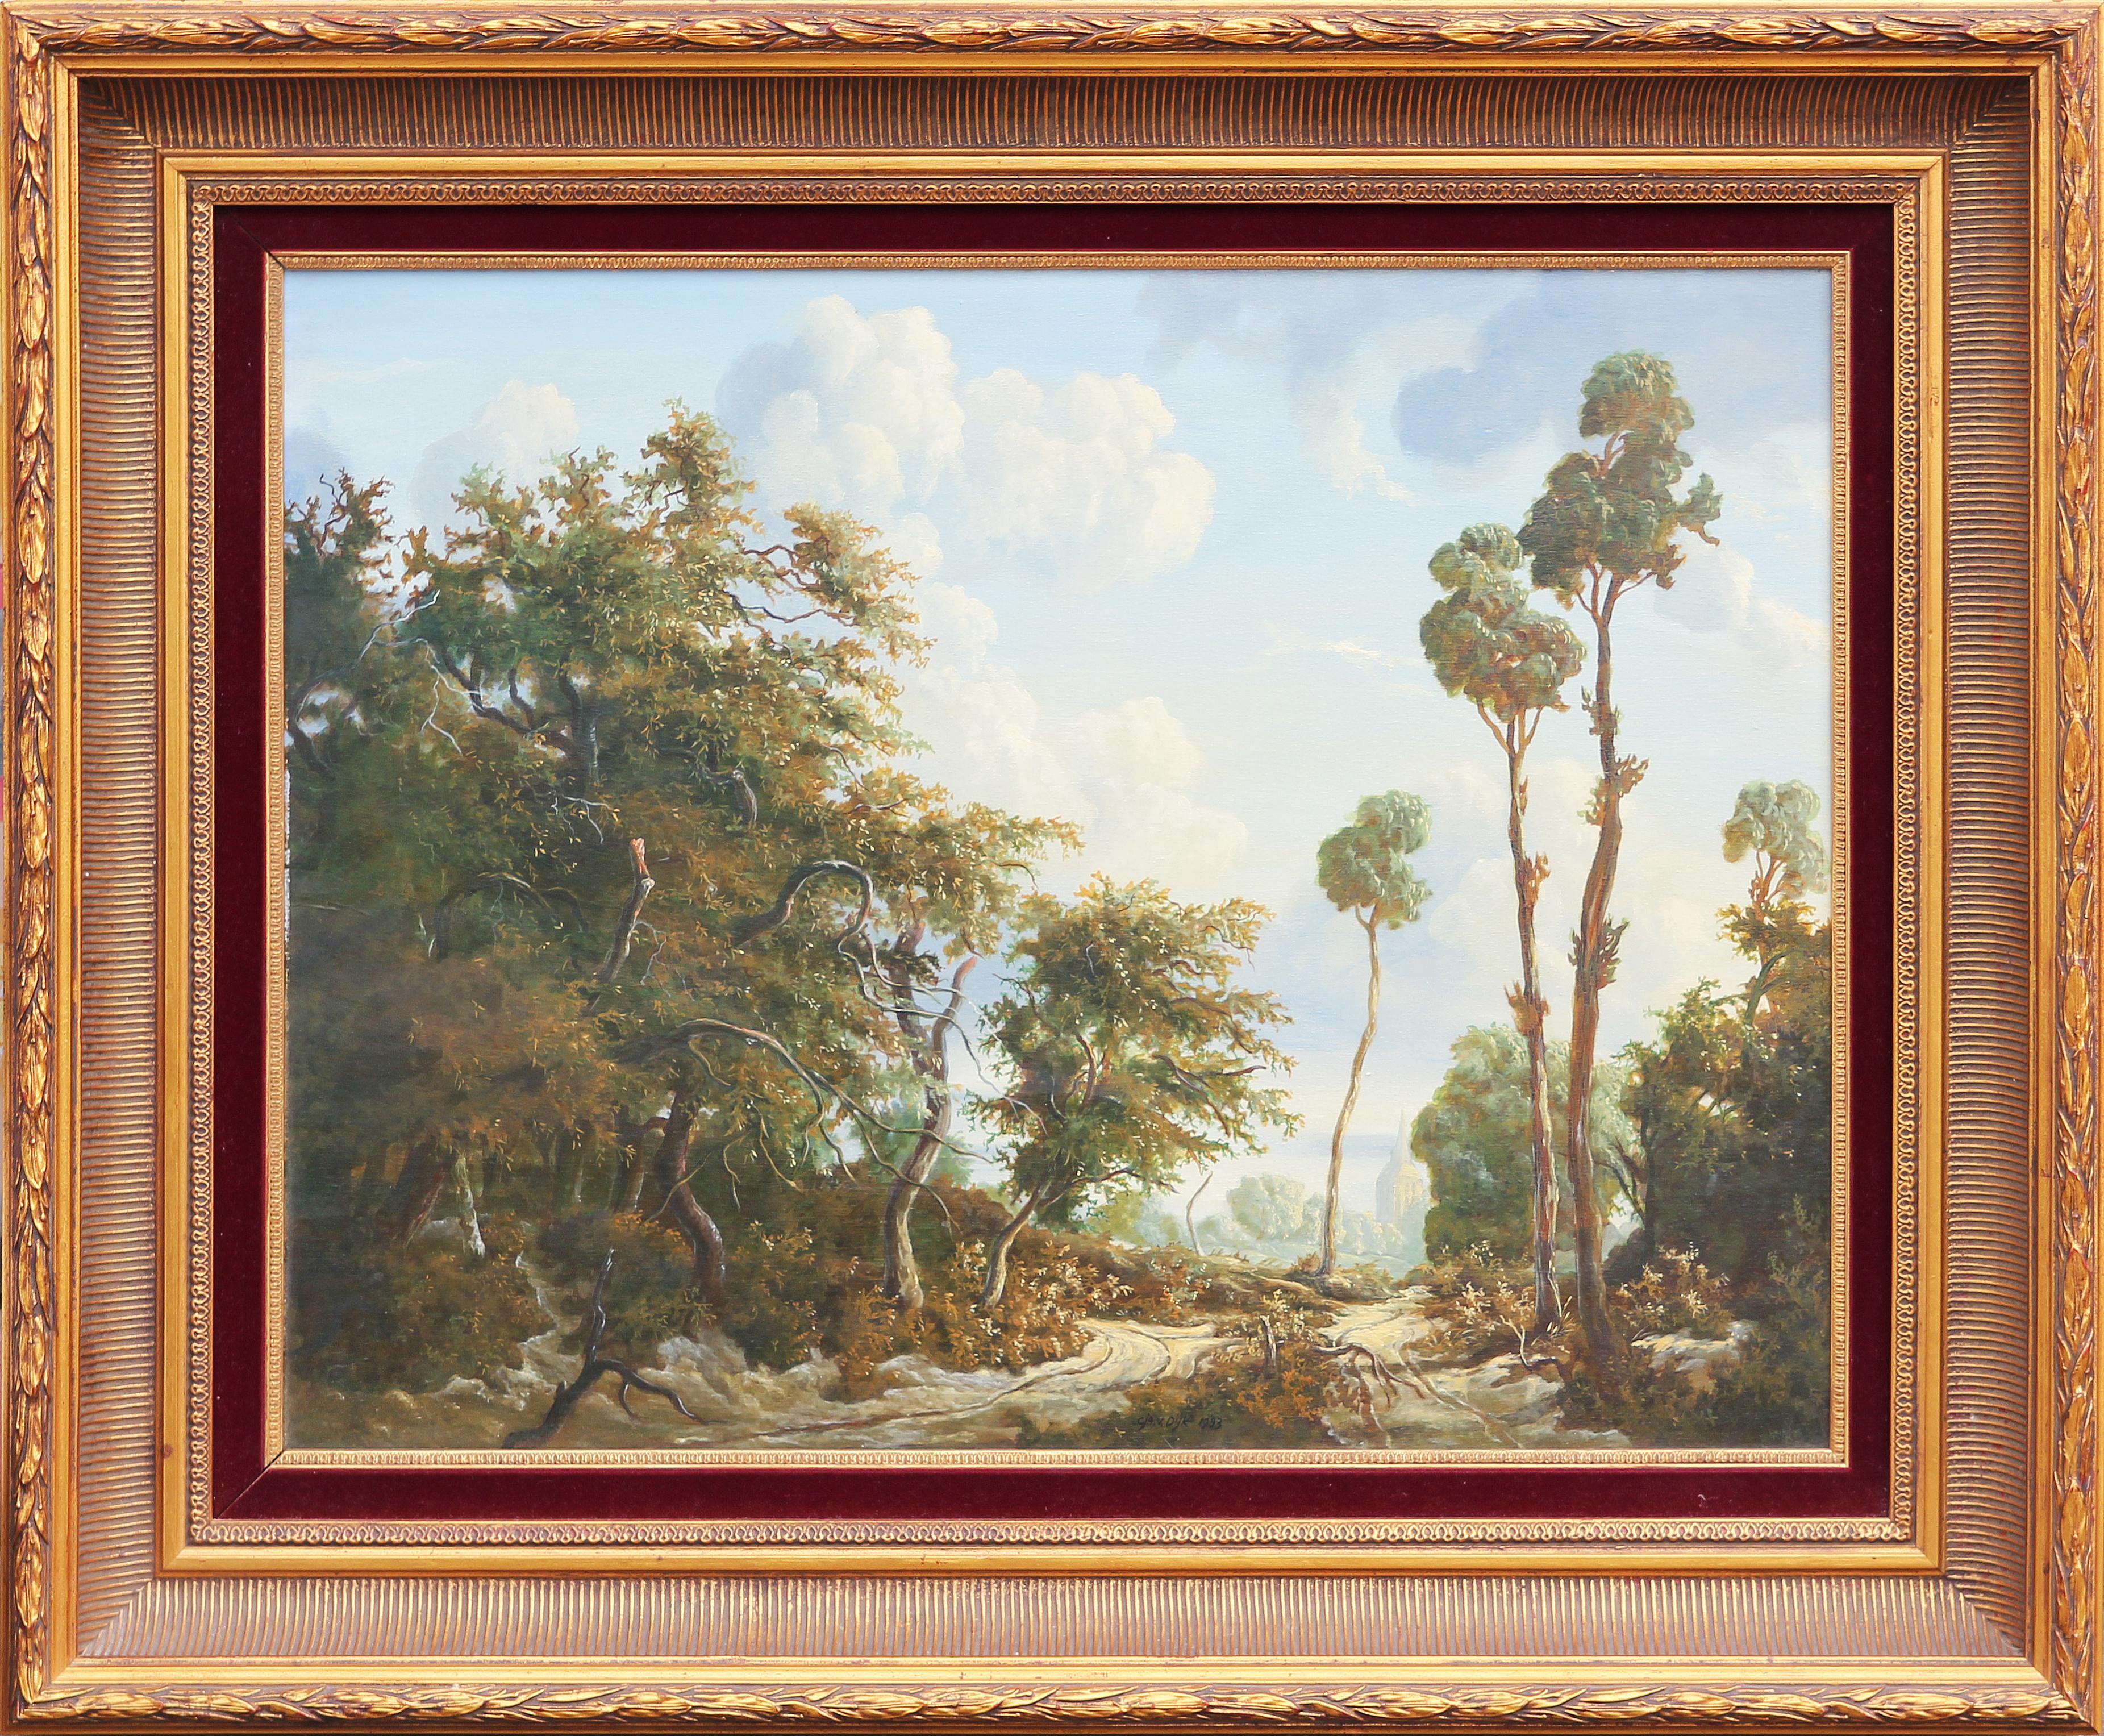 Landscape Painting Cja. V. Dijk - Sublime peinture de paysage pittoresque en forêt hollandaise de style naturaliste et romantique